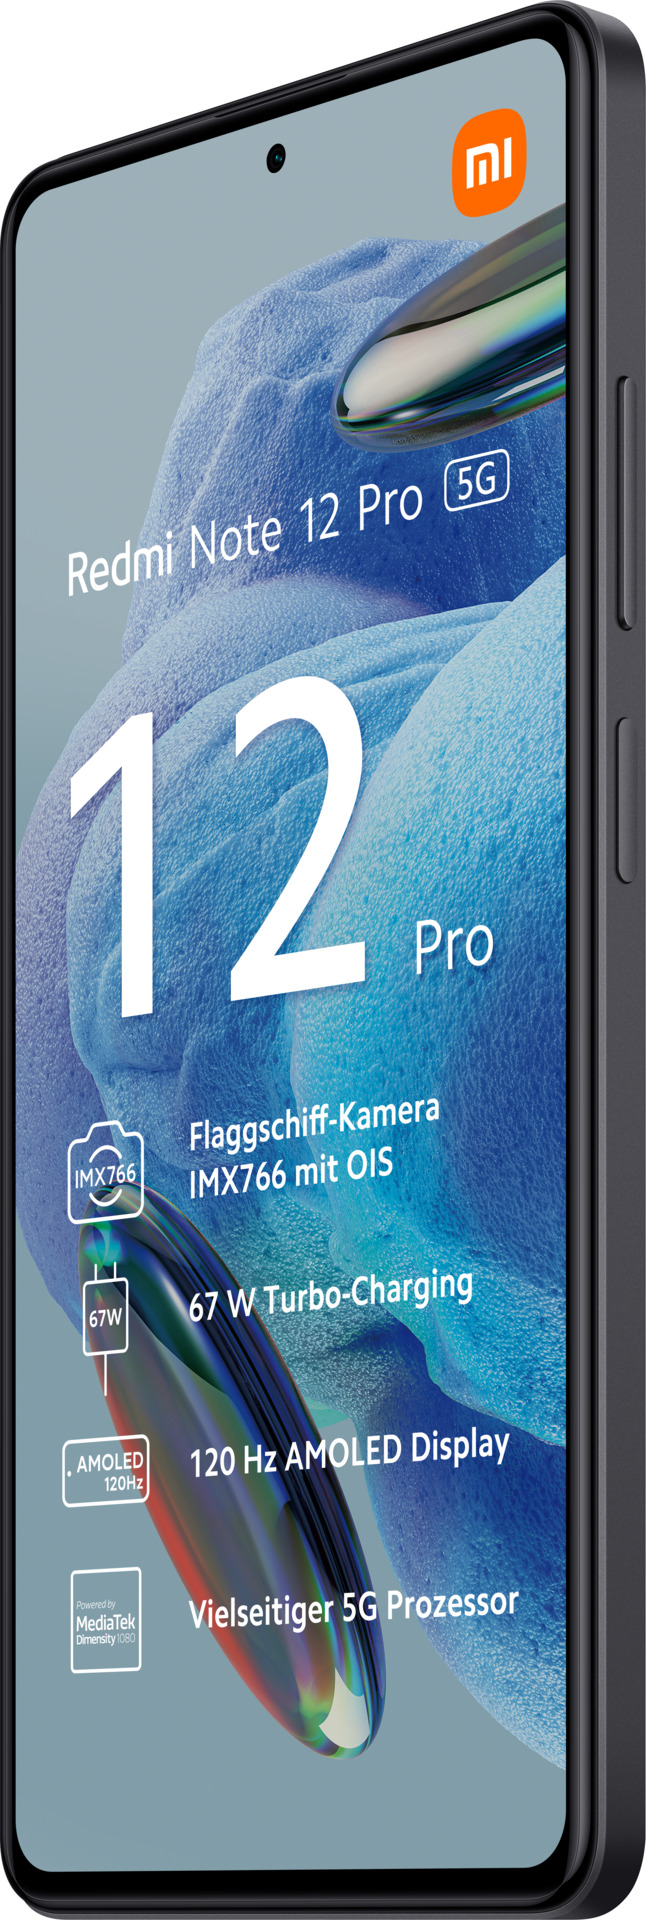 Xiaomi Redmi Note midnight aetka 8GB+128GB Shop | black 12 5G Pro